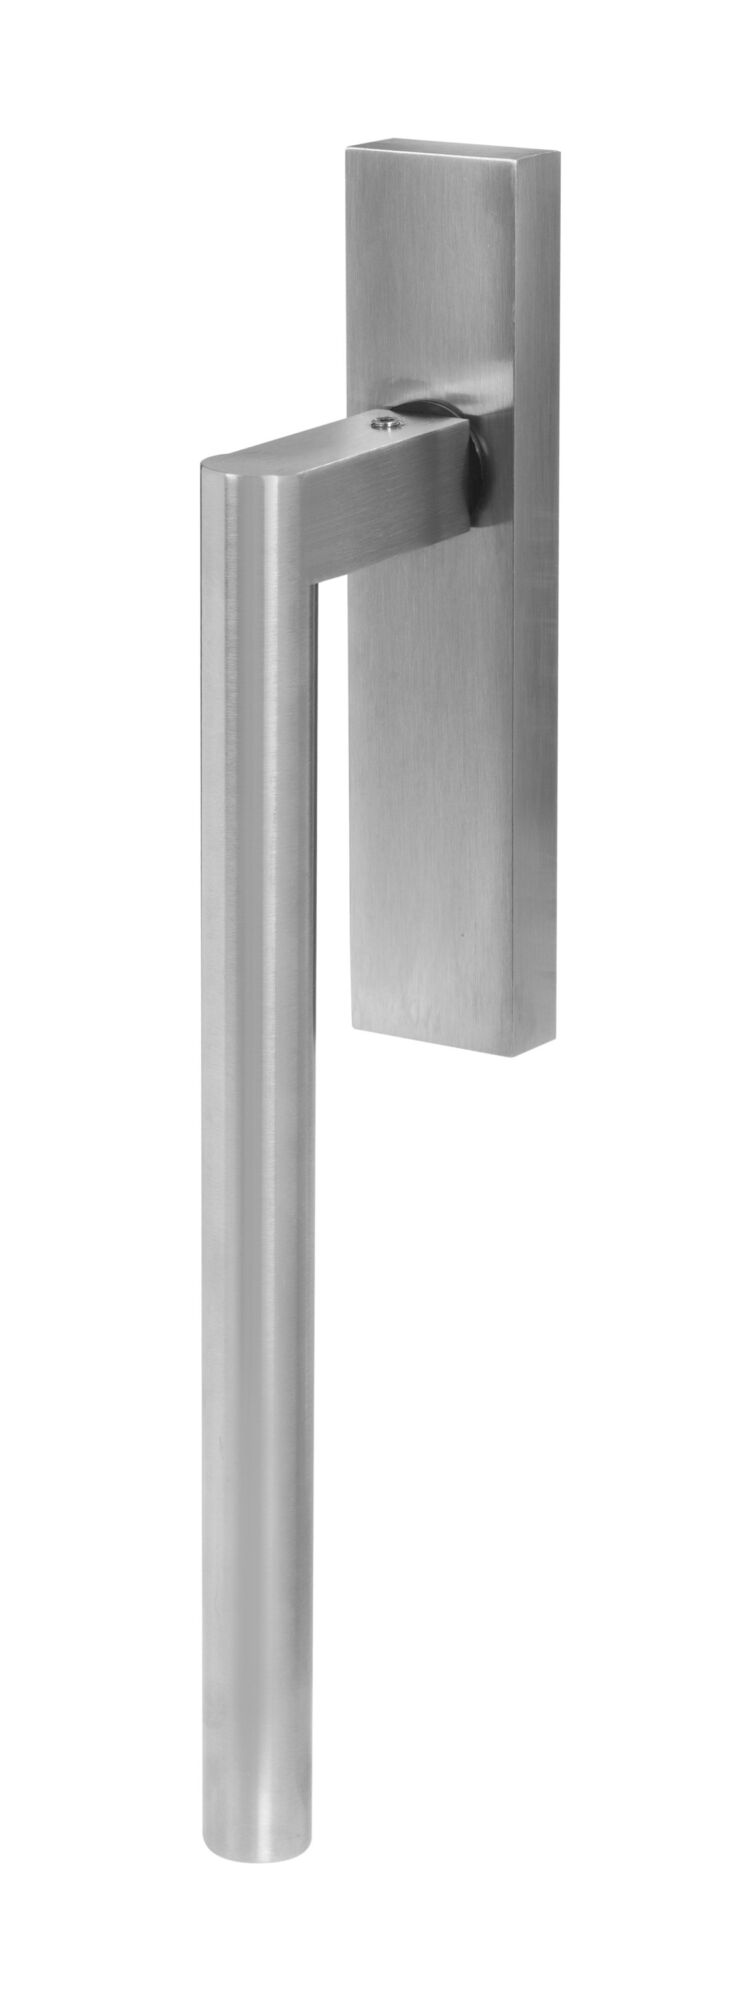 flush door handles: Round lift and slide door handle